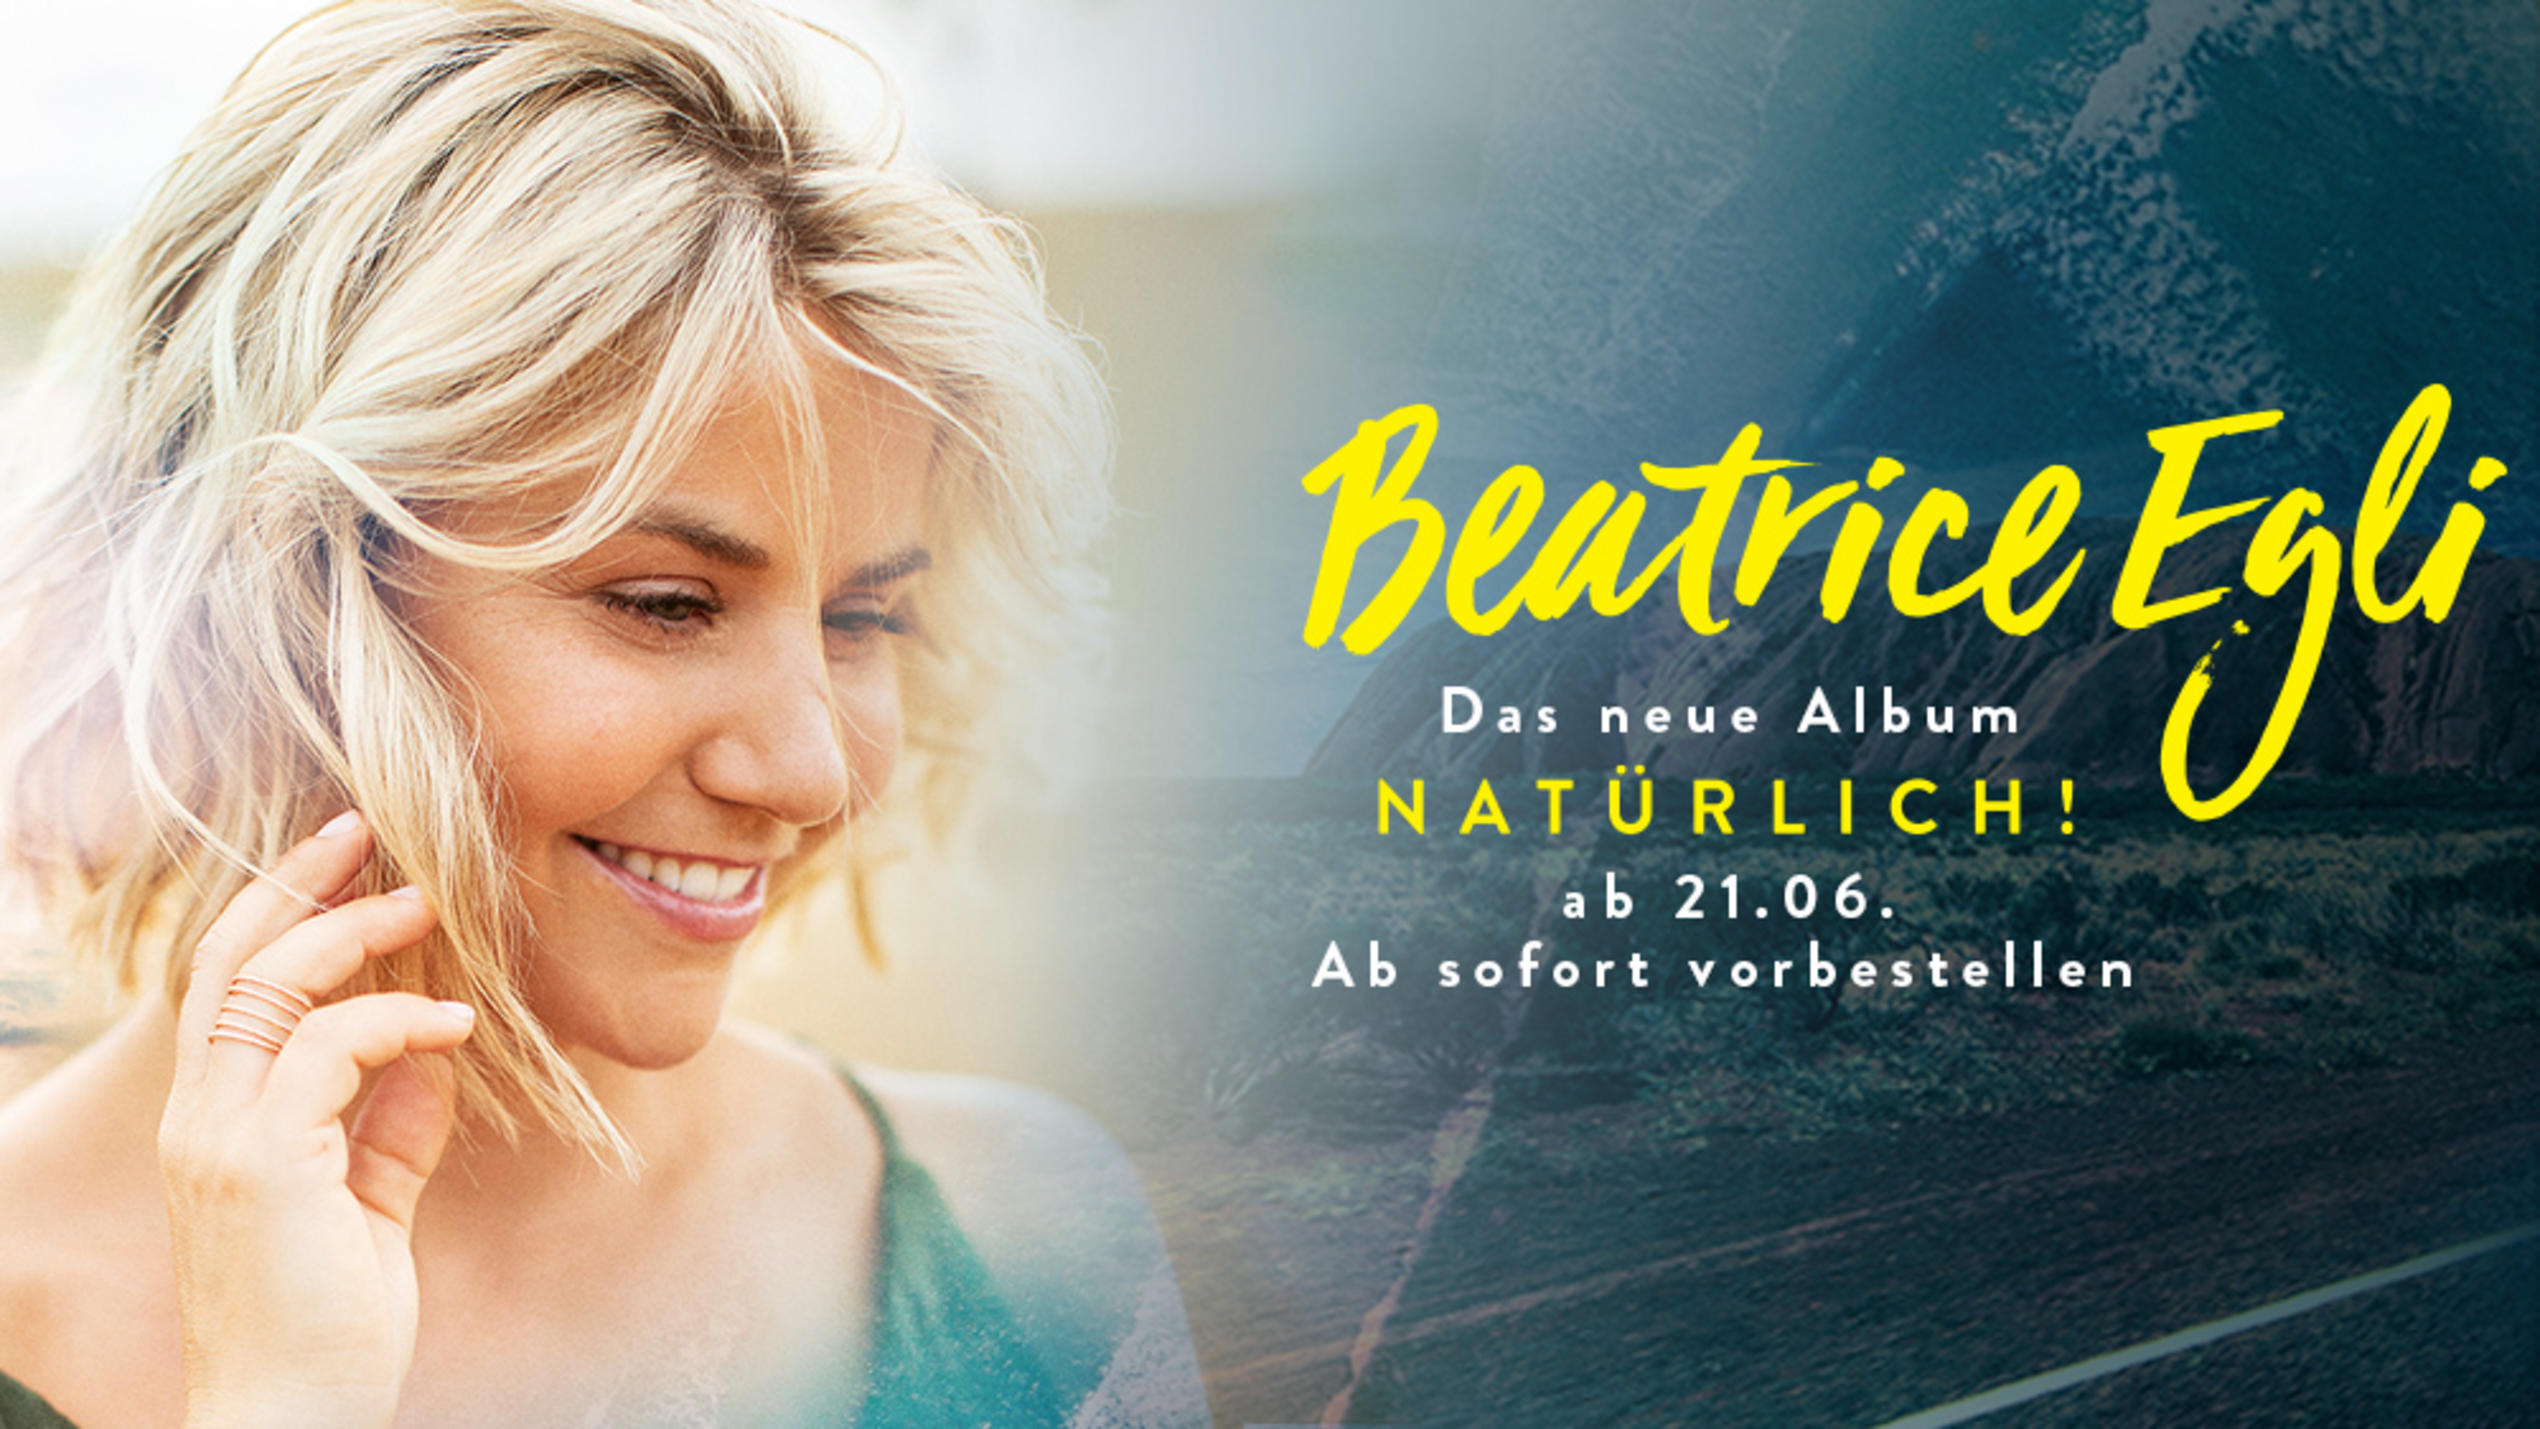 Beatrice Egli Mit Dem Neuen Album Naturlich Und Der Ersten Single Terra Australia